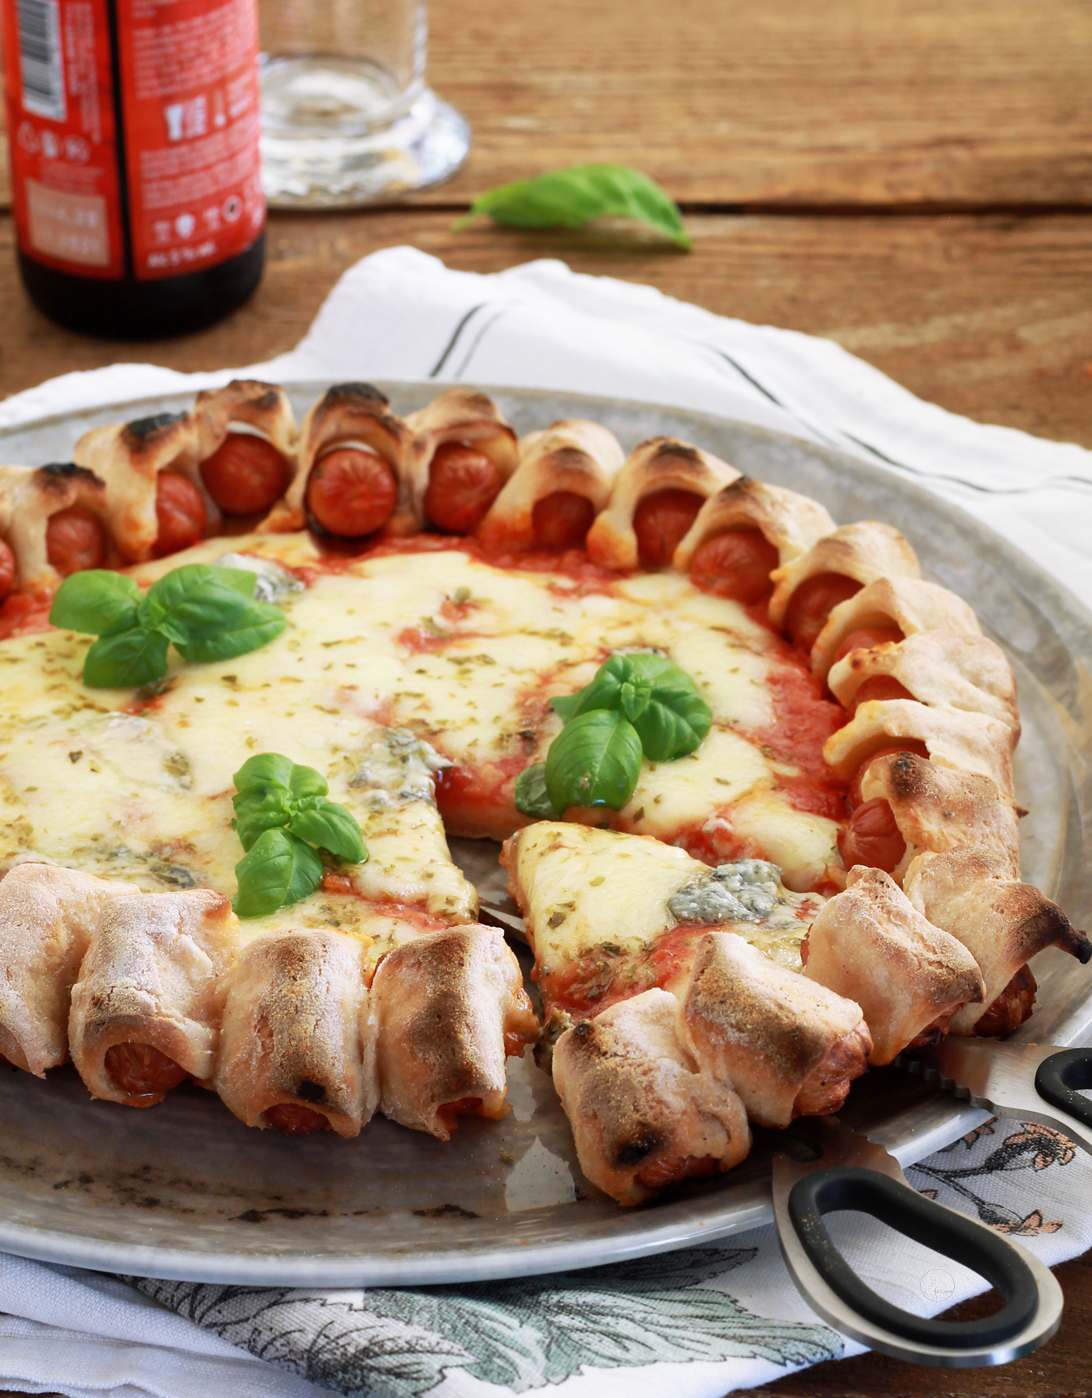 Wursty pizza sans gluten - La Cassata Celiaca